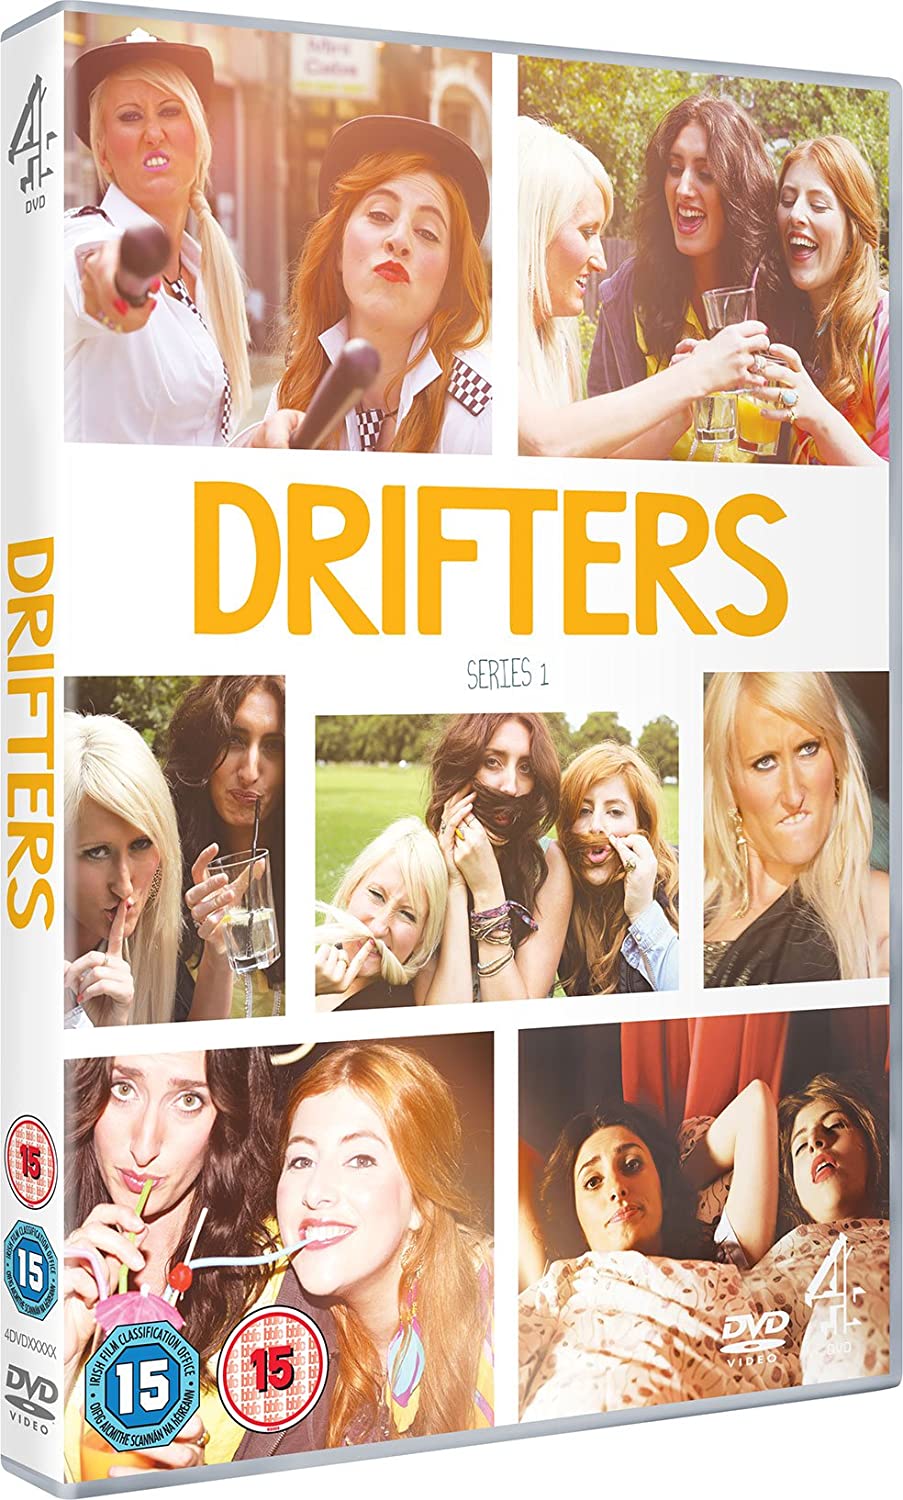 Drifters - TV series [DVD]